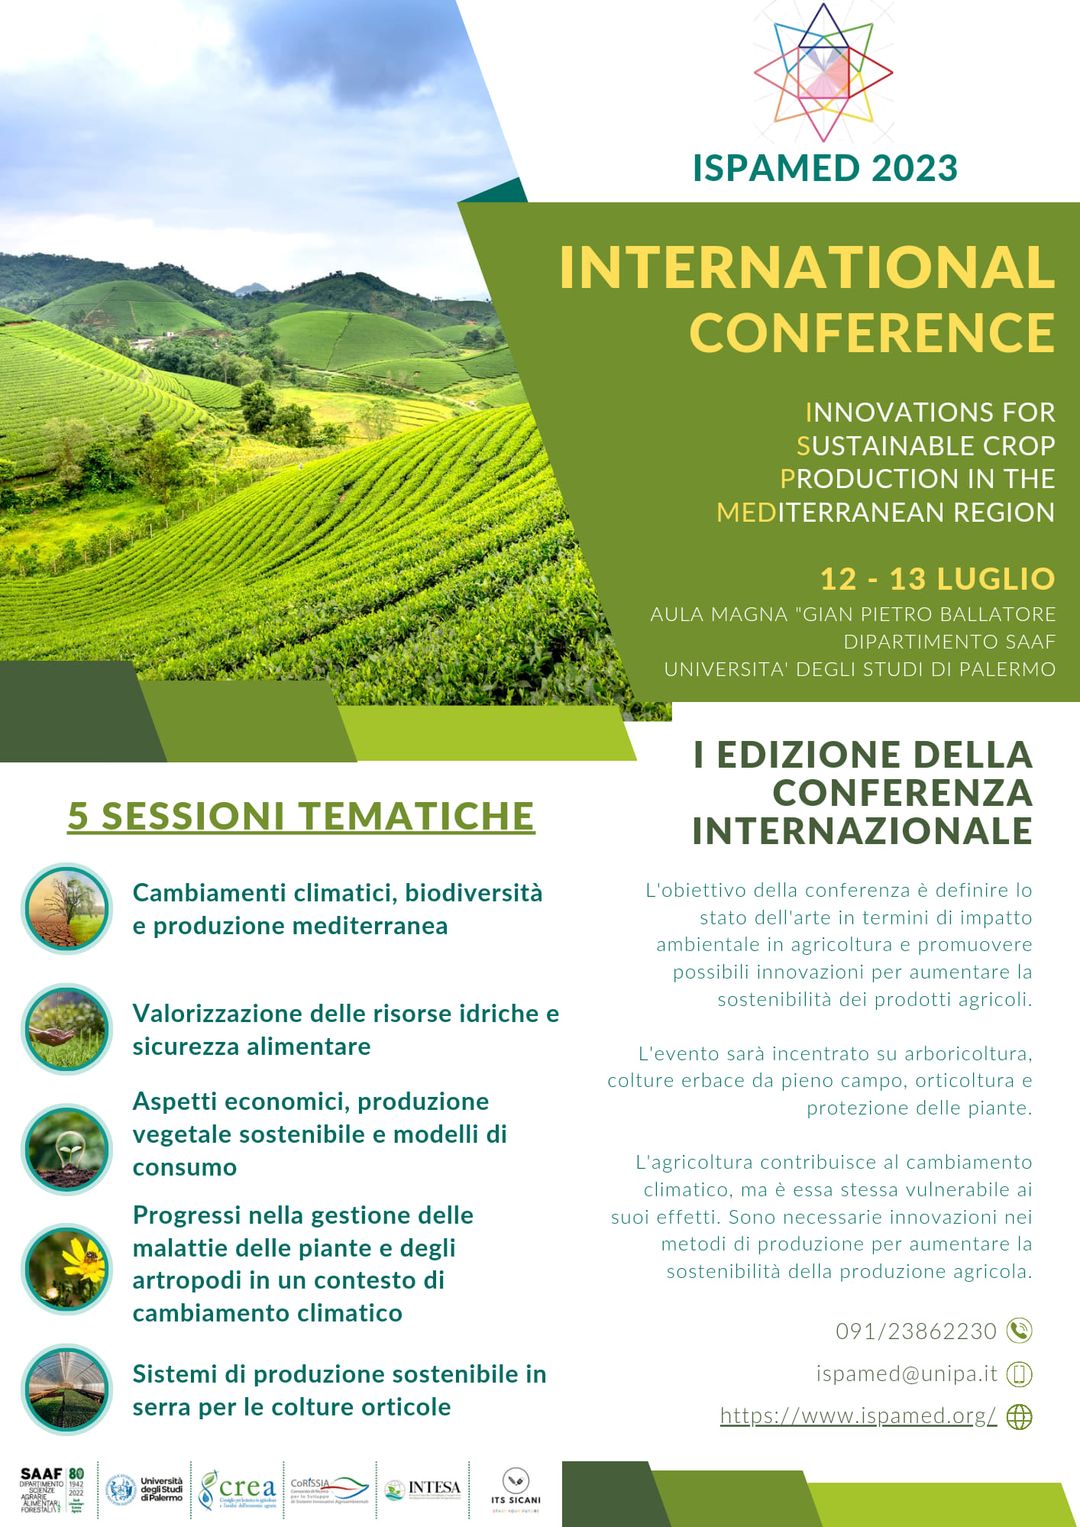 Scopri di più sull'articolo Agricoltura sostenibile e cambiamenti climatici: da mercoledì 12 luglio, a Palermo, la Conferenza internazionale sull’innovazione agro-sostenibile nell’area mediterranea